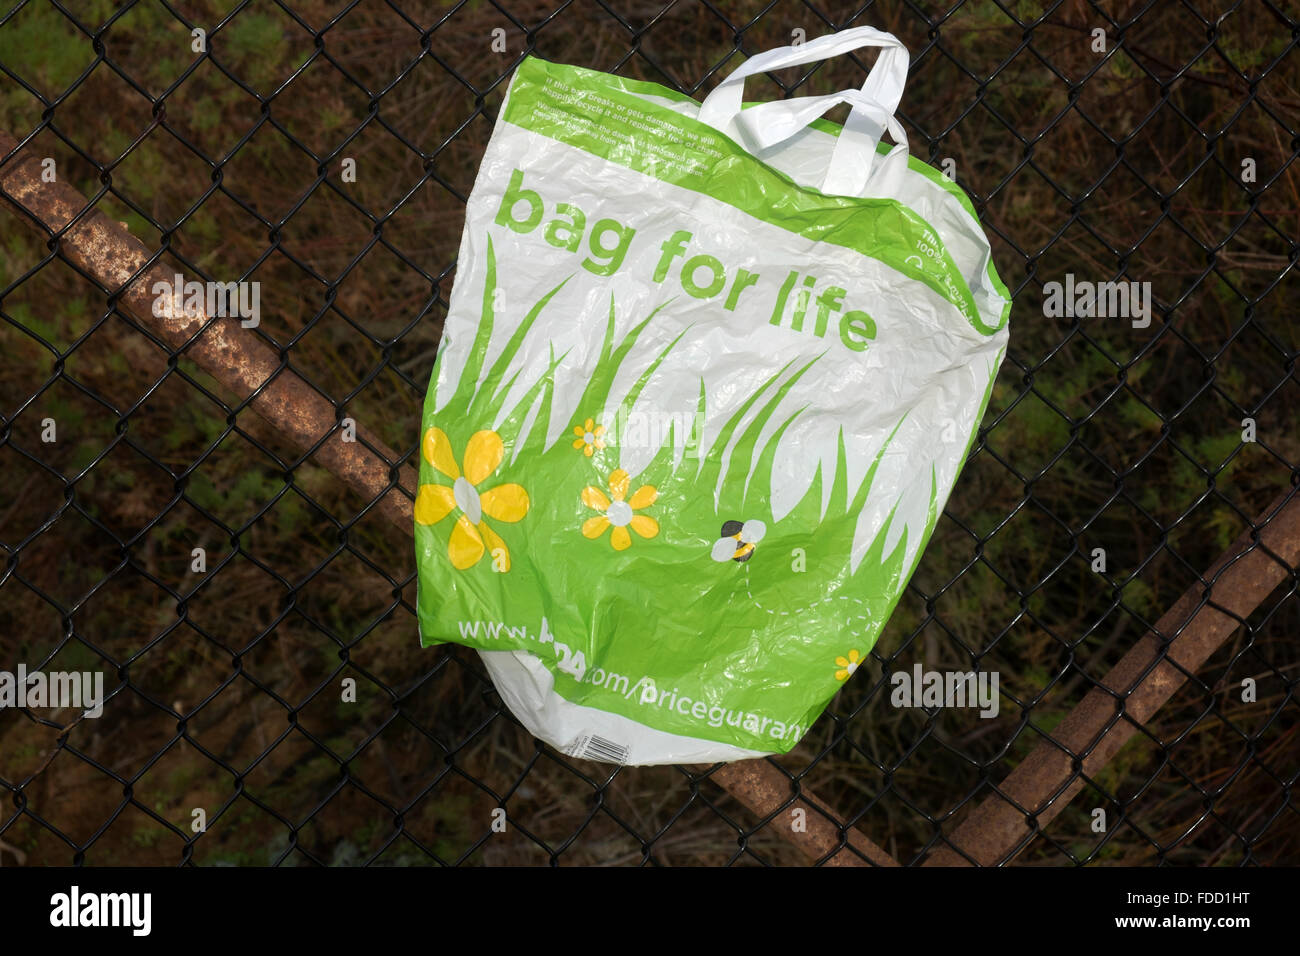 Share 165+ bag for life plastic super hot - kidsdream.edu.vn